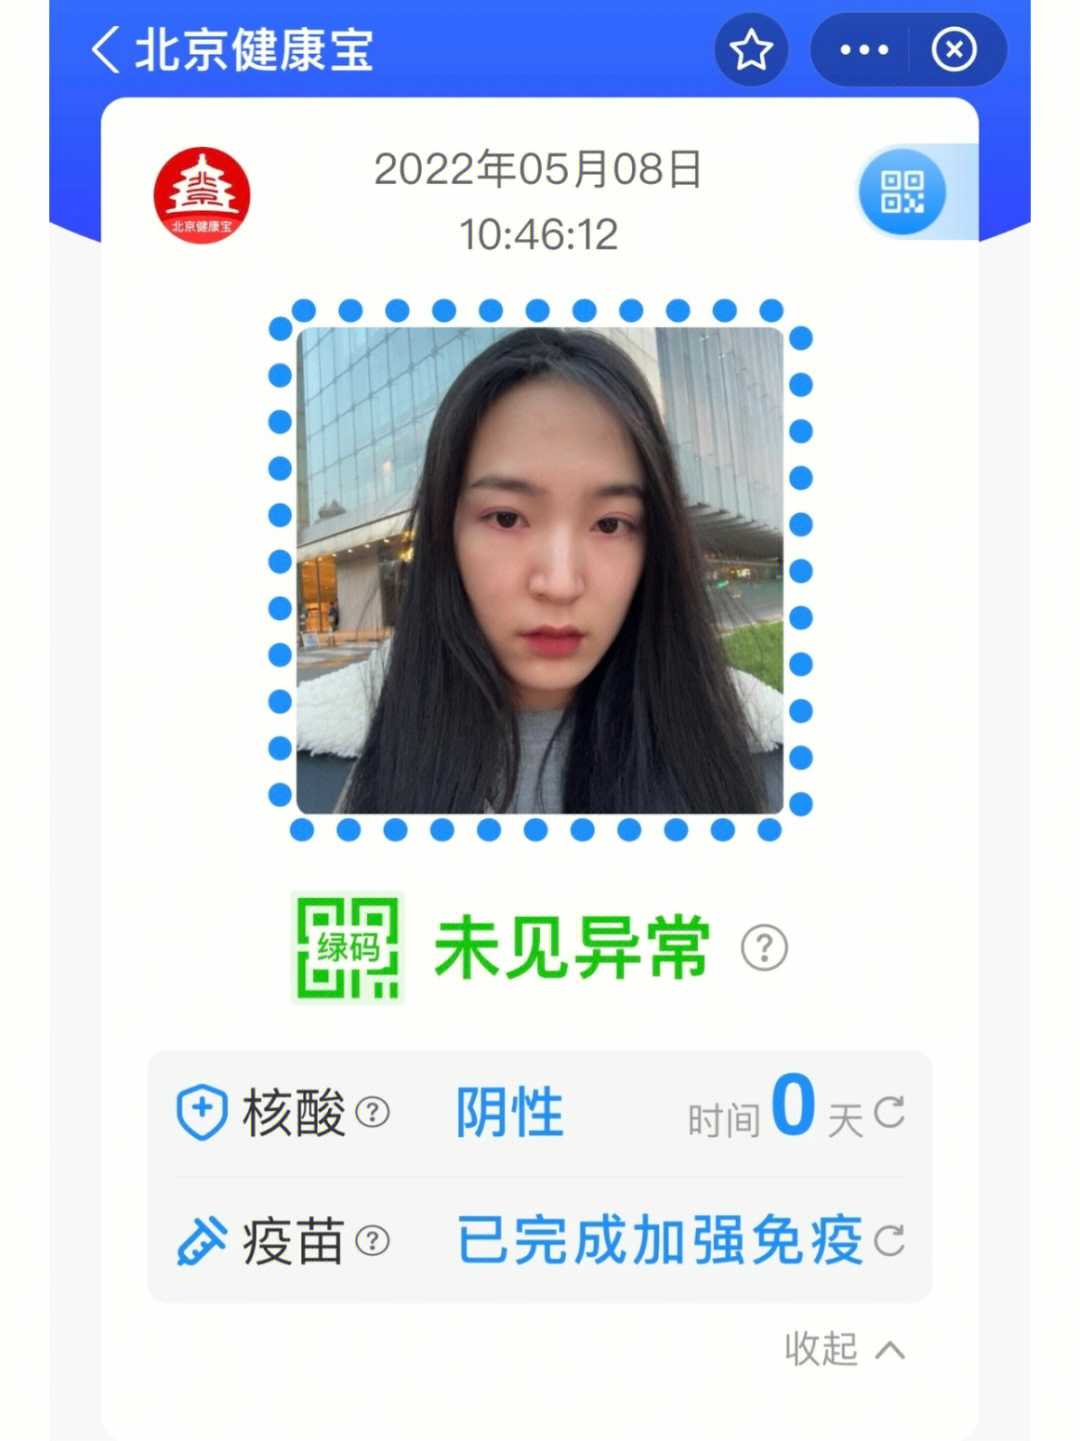 北京健康宝码图片图片